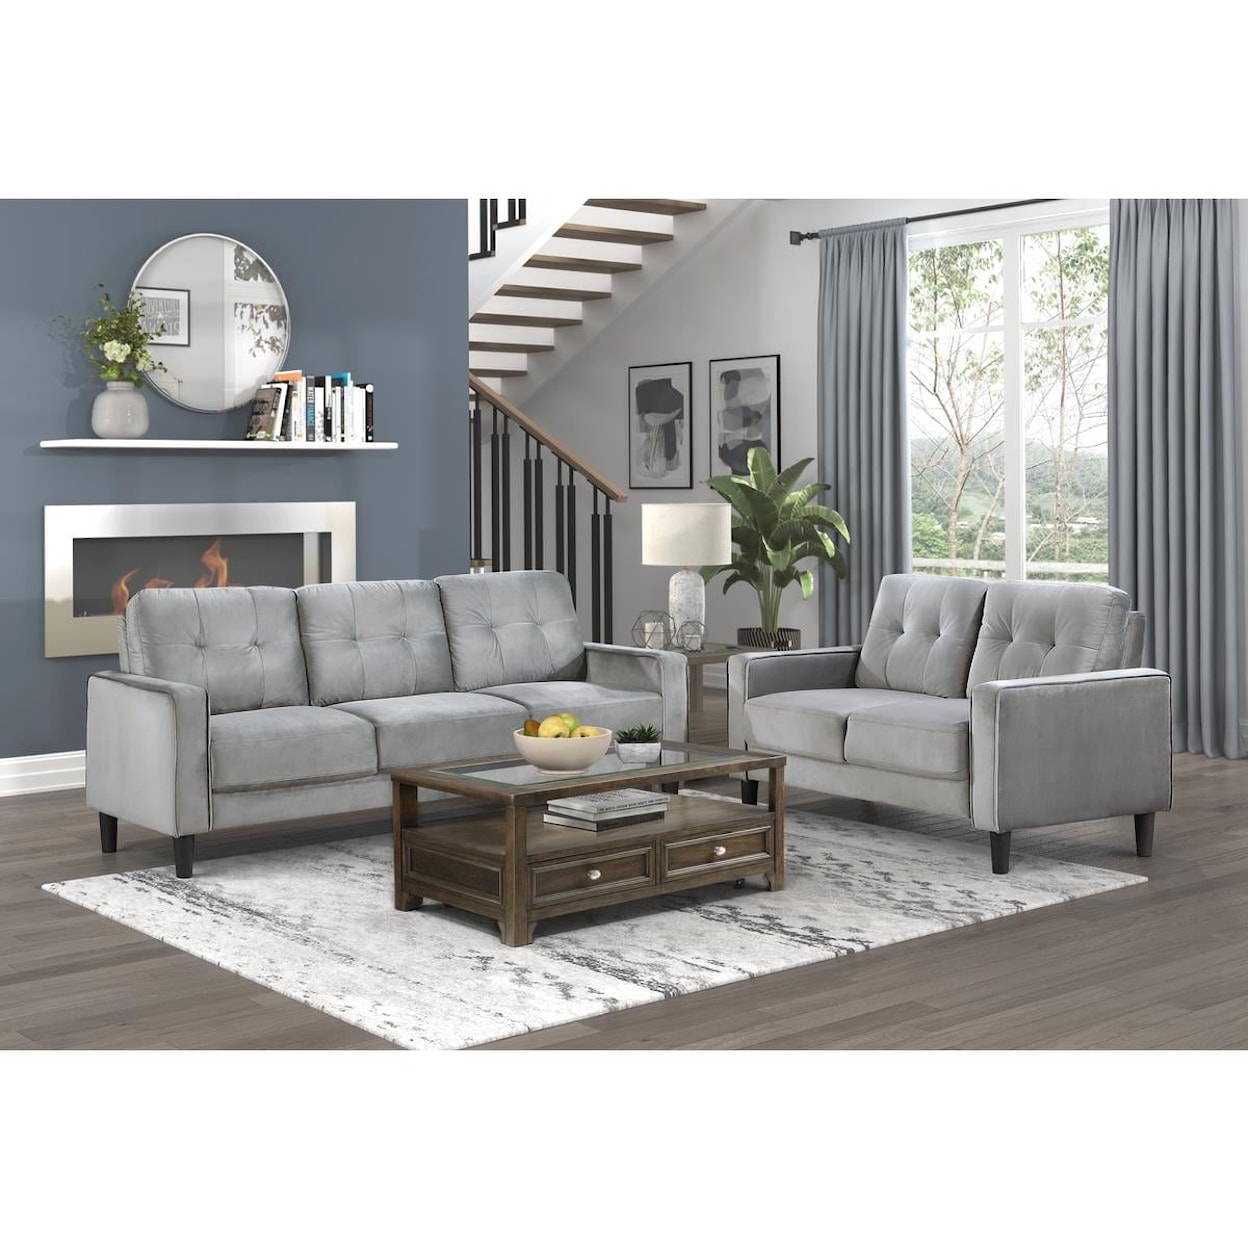 Homelegance Furniture Beven Sofa